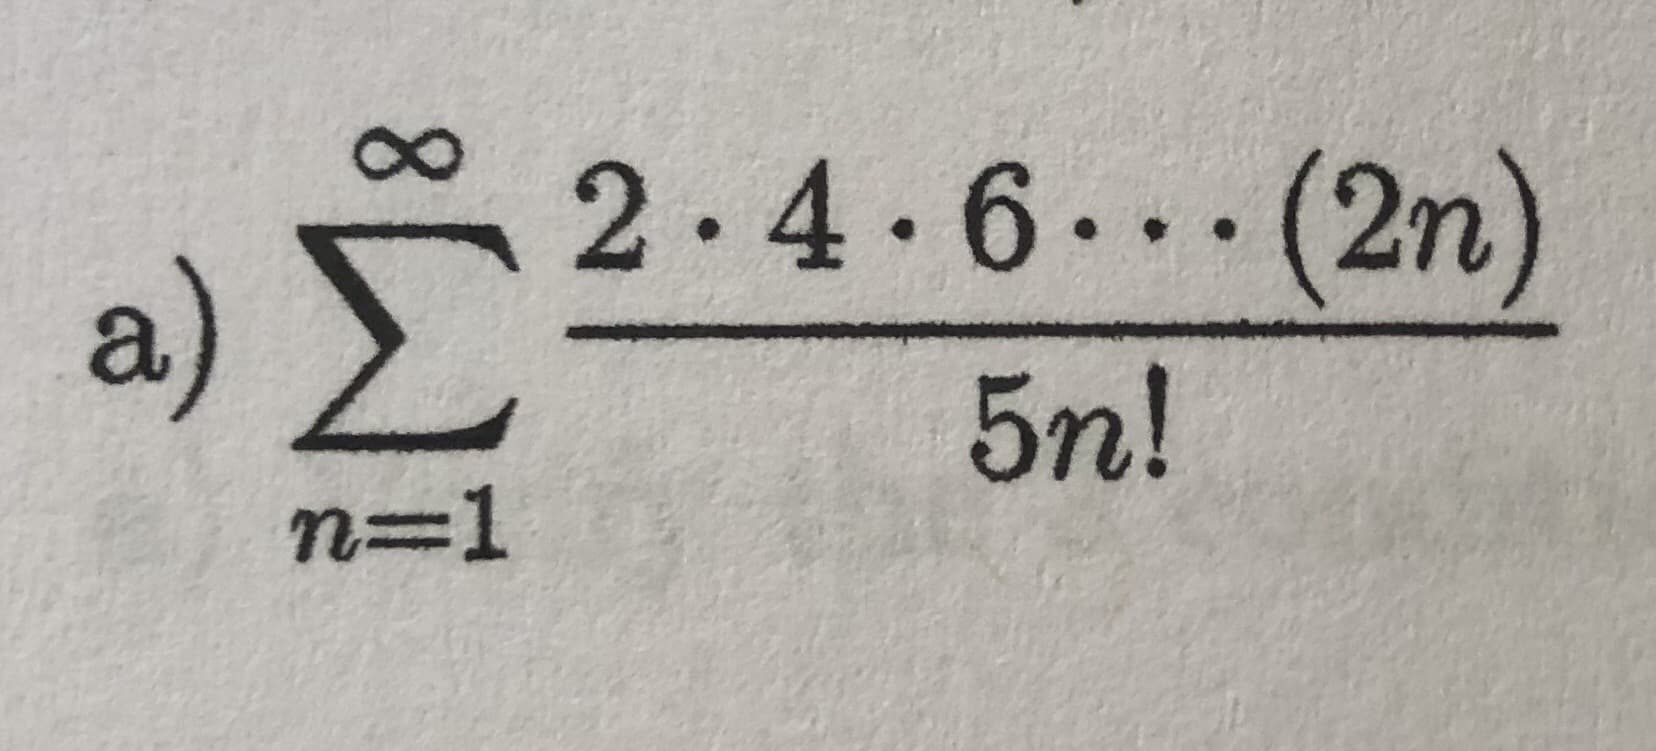 2.4.6..(2n)
a)
5n!
n=1
